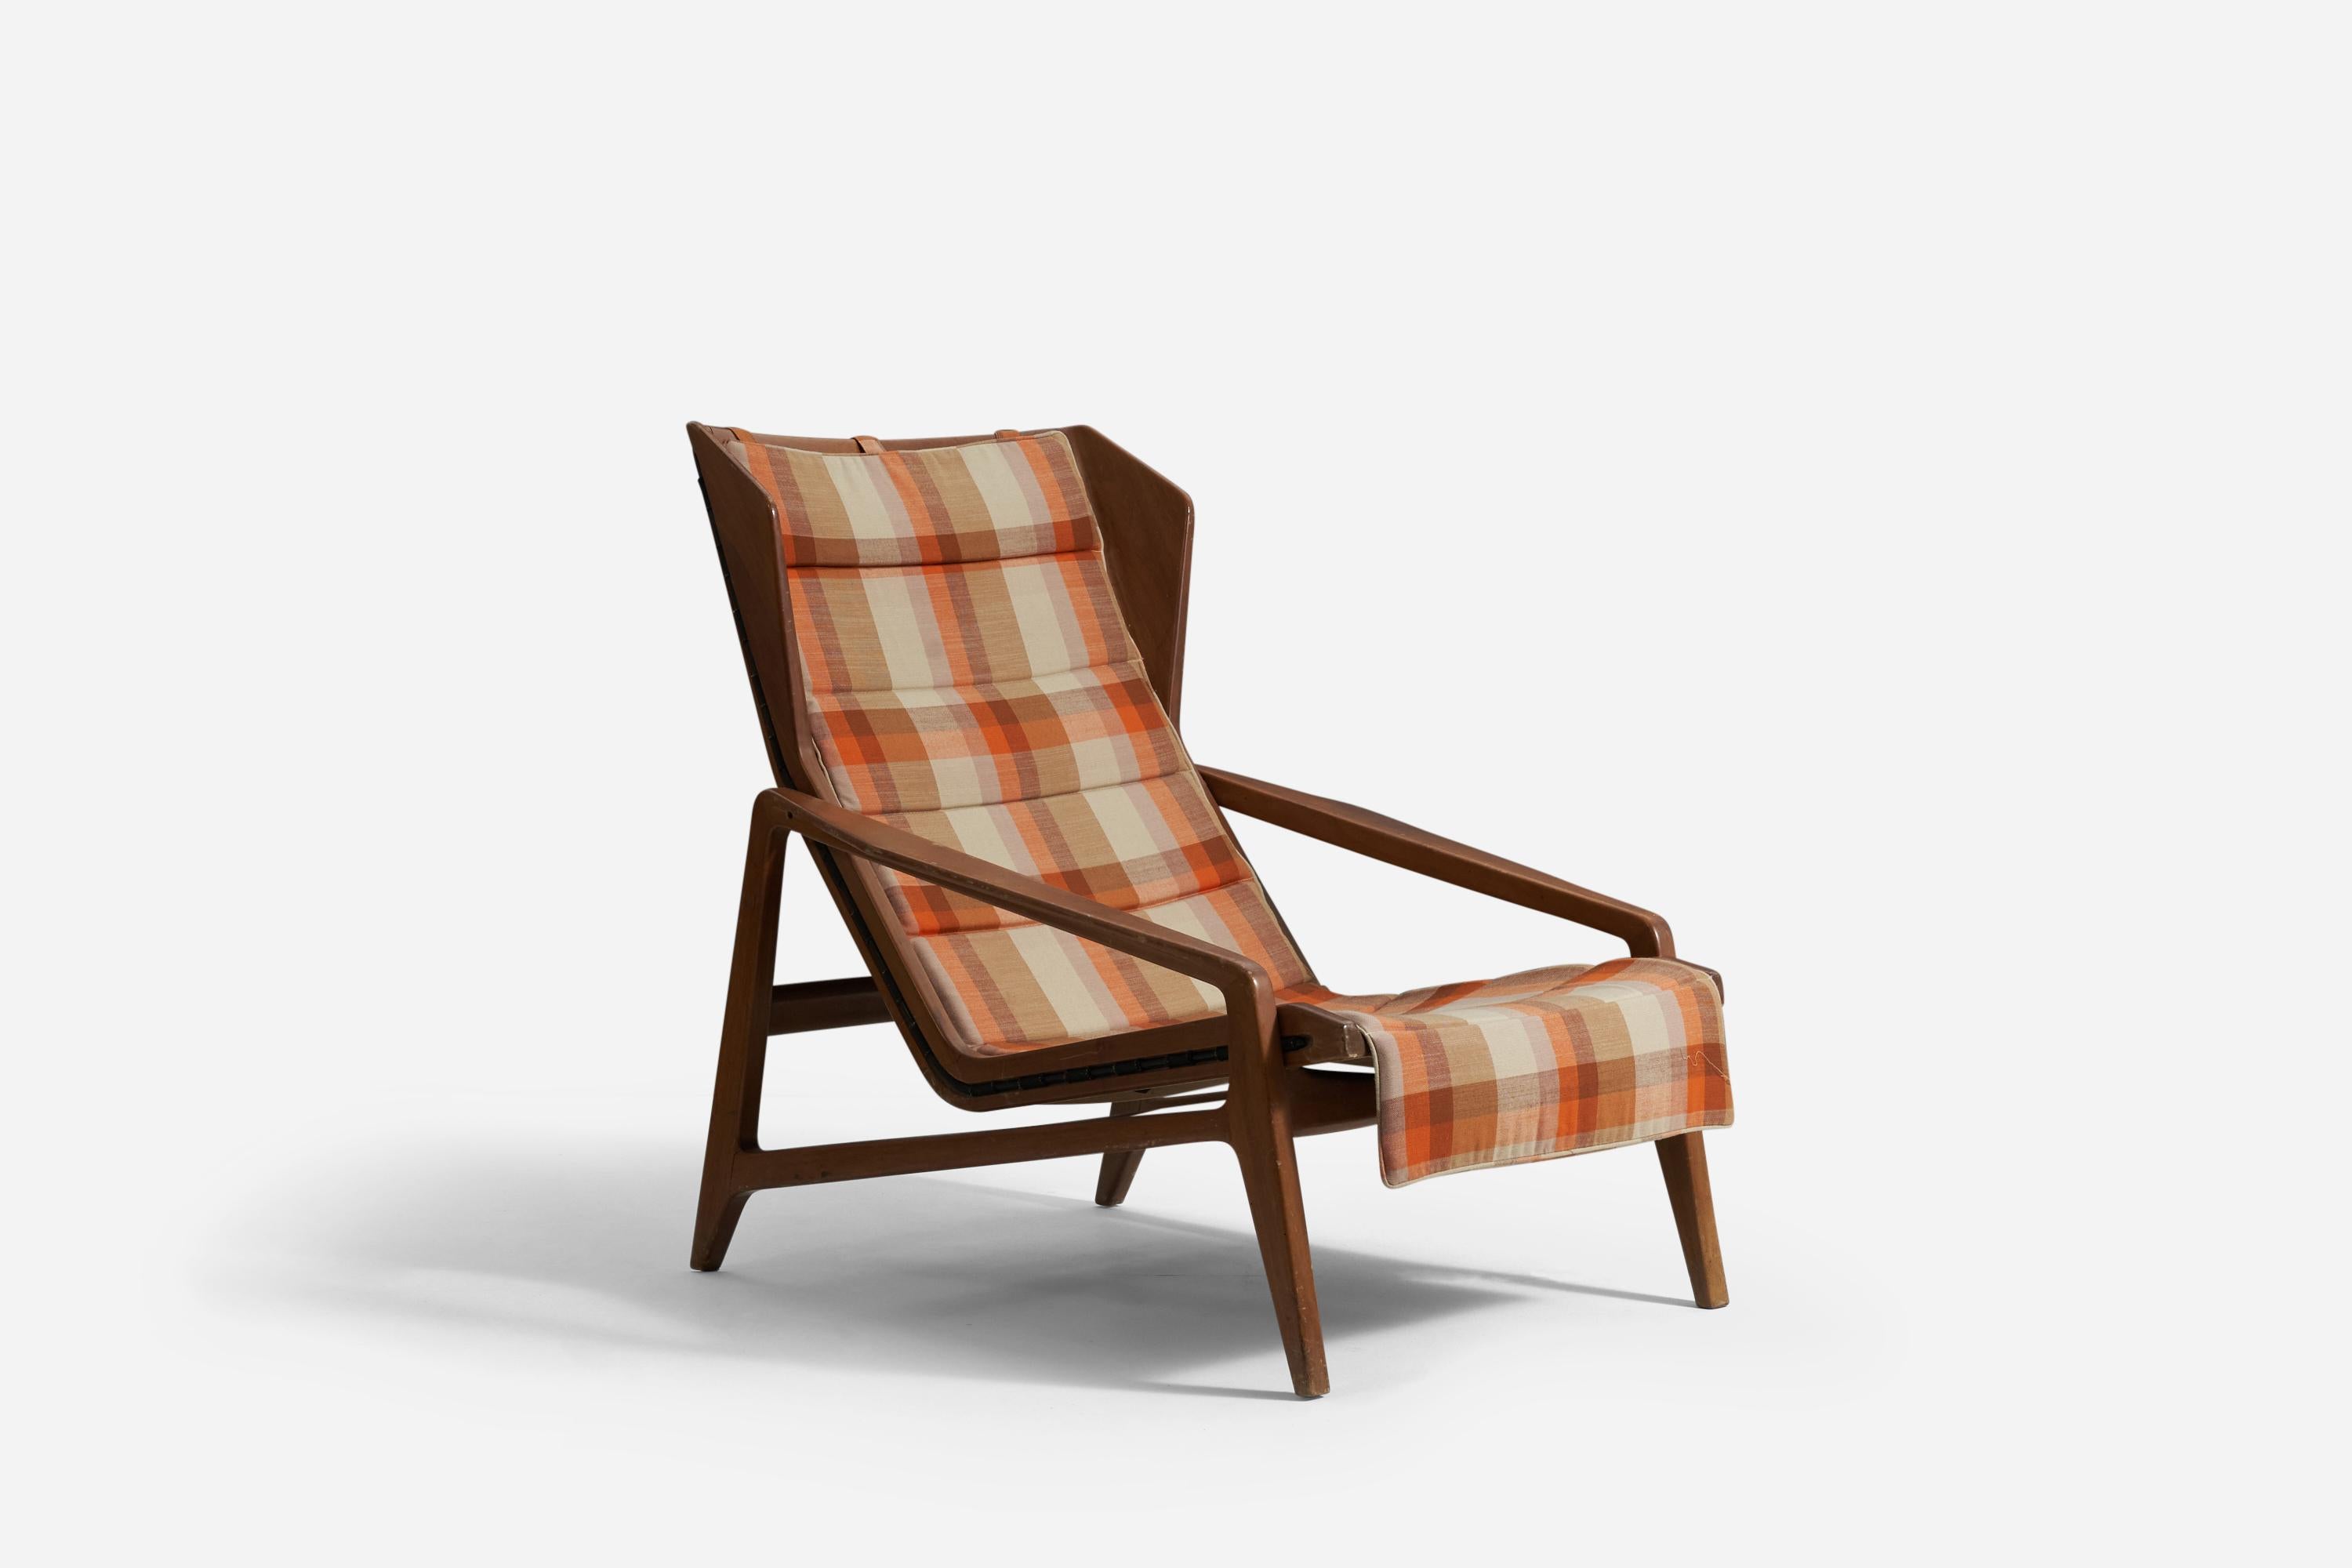 Ein seltener und ikonischer Loungesessel, entworfen von Gio Ponti. Produziert von Cassina, Meda, Italien, ca. 1956. 

Dieser Stuhl wird mit einem Echtheitszertifikat des Gio Ponti Archivs verkauft.

Weitere italienische Designer dieser Zeit sind